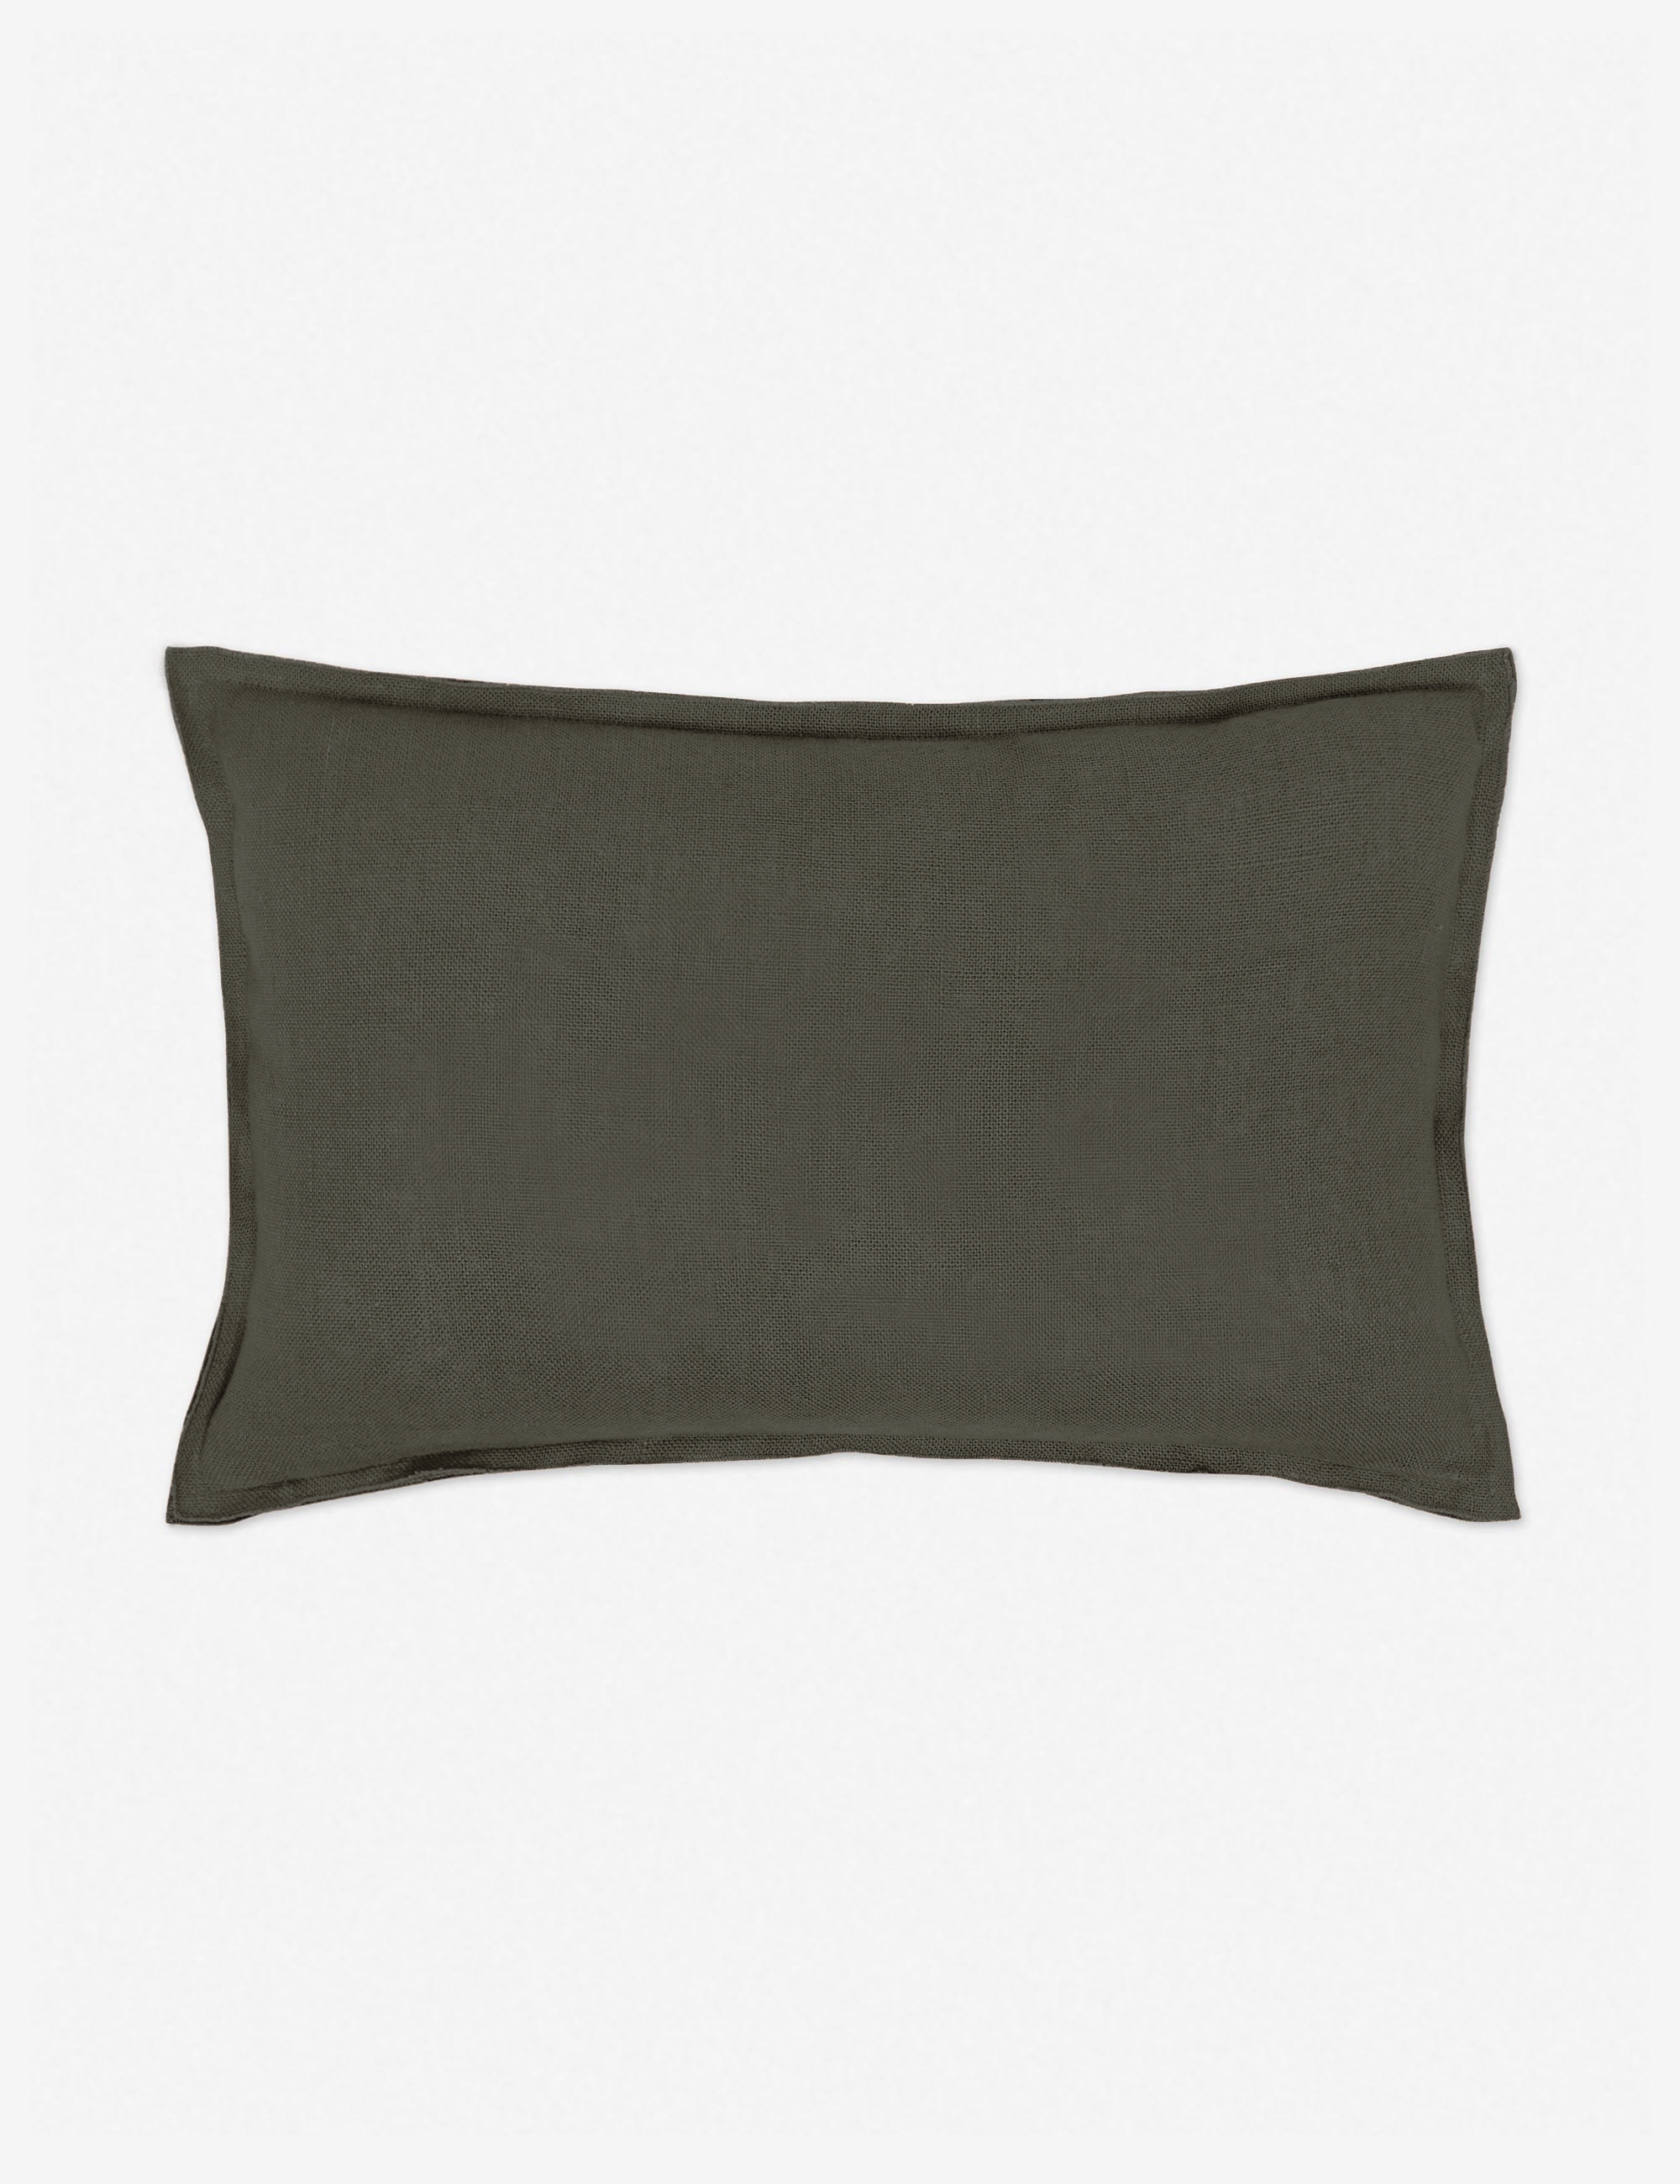 Arlo Linen Lumbar Pillow, Conifer, 20" x 13" - Image 0